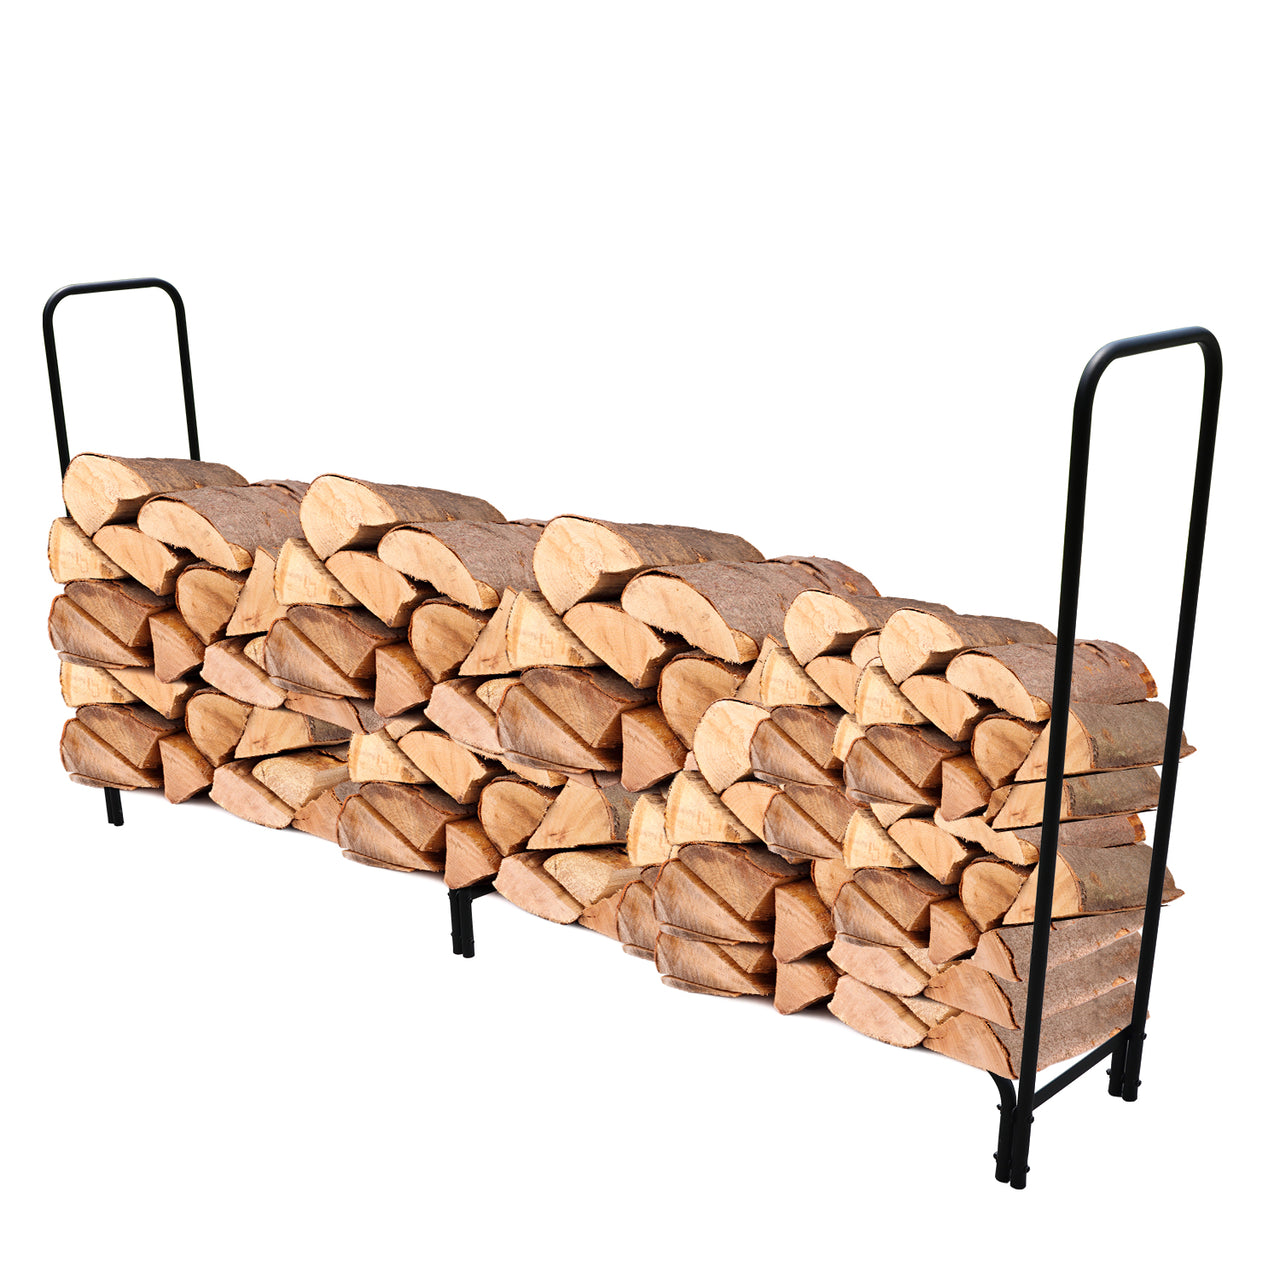 8ft Firewood Rack Heavy Duty Log Rack Indoor Outdoor Wood